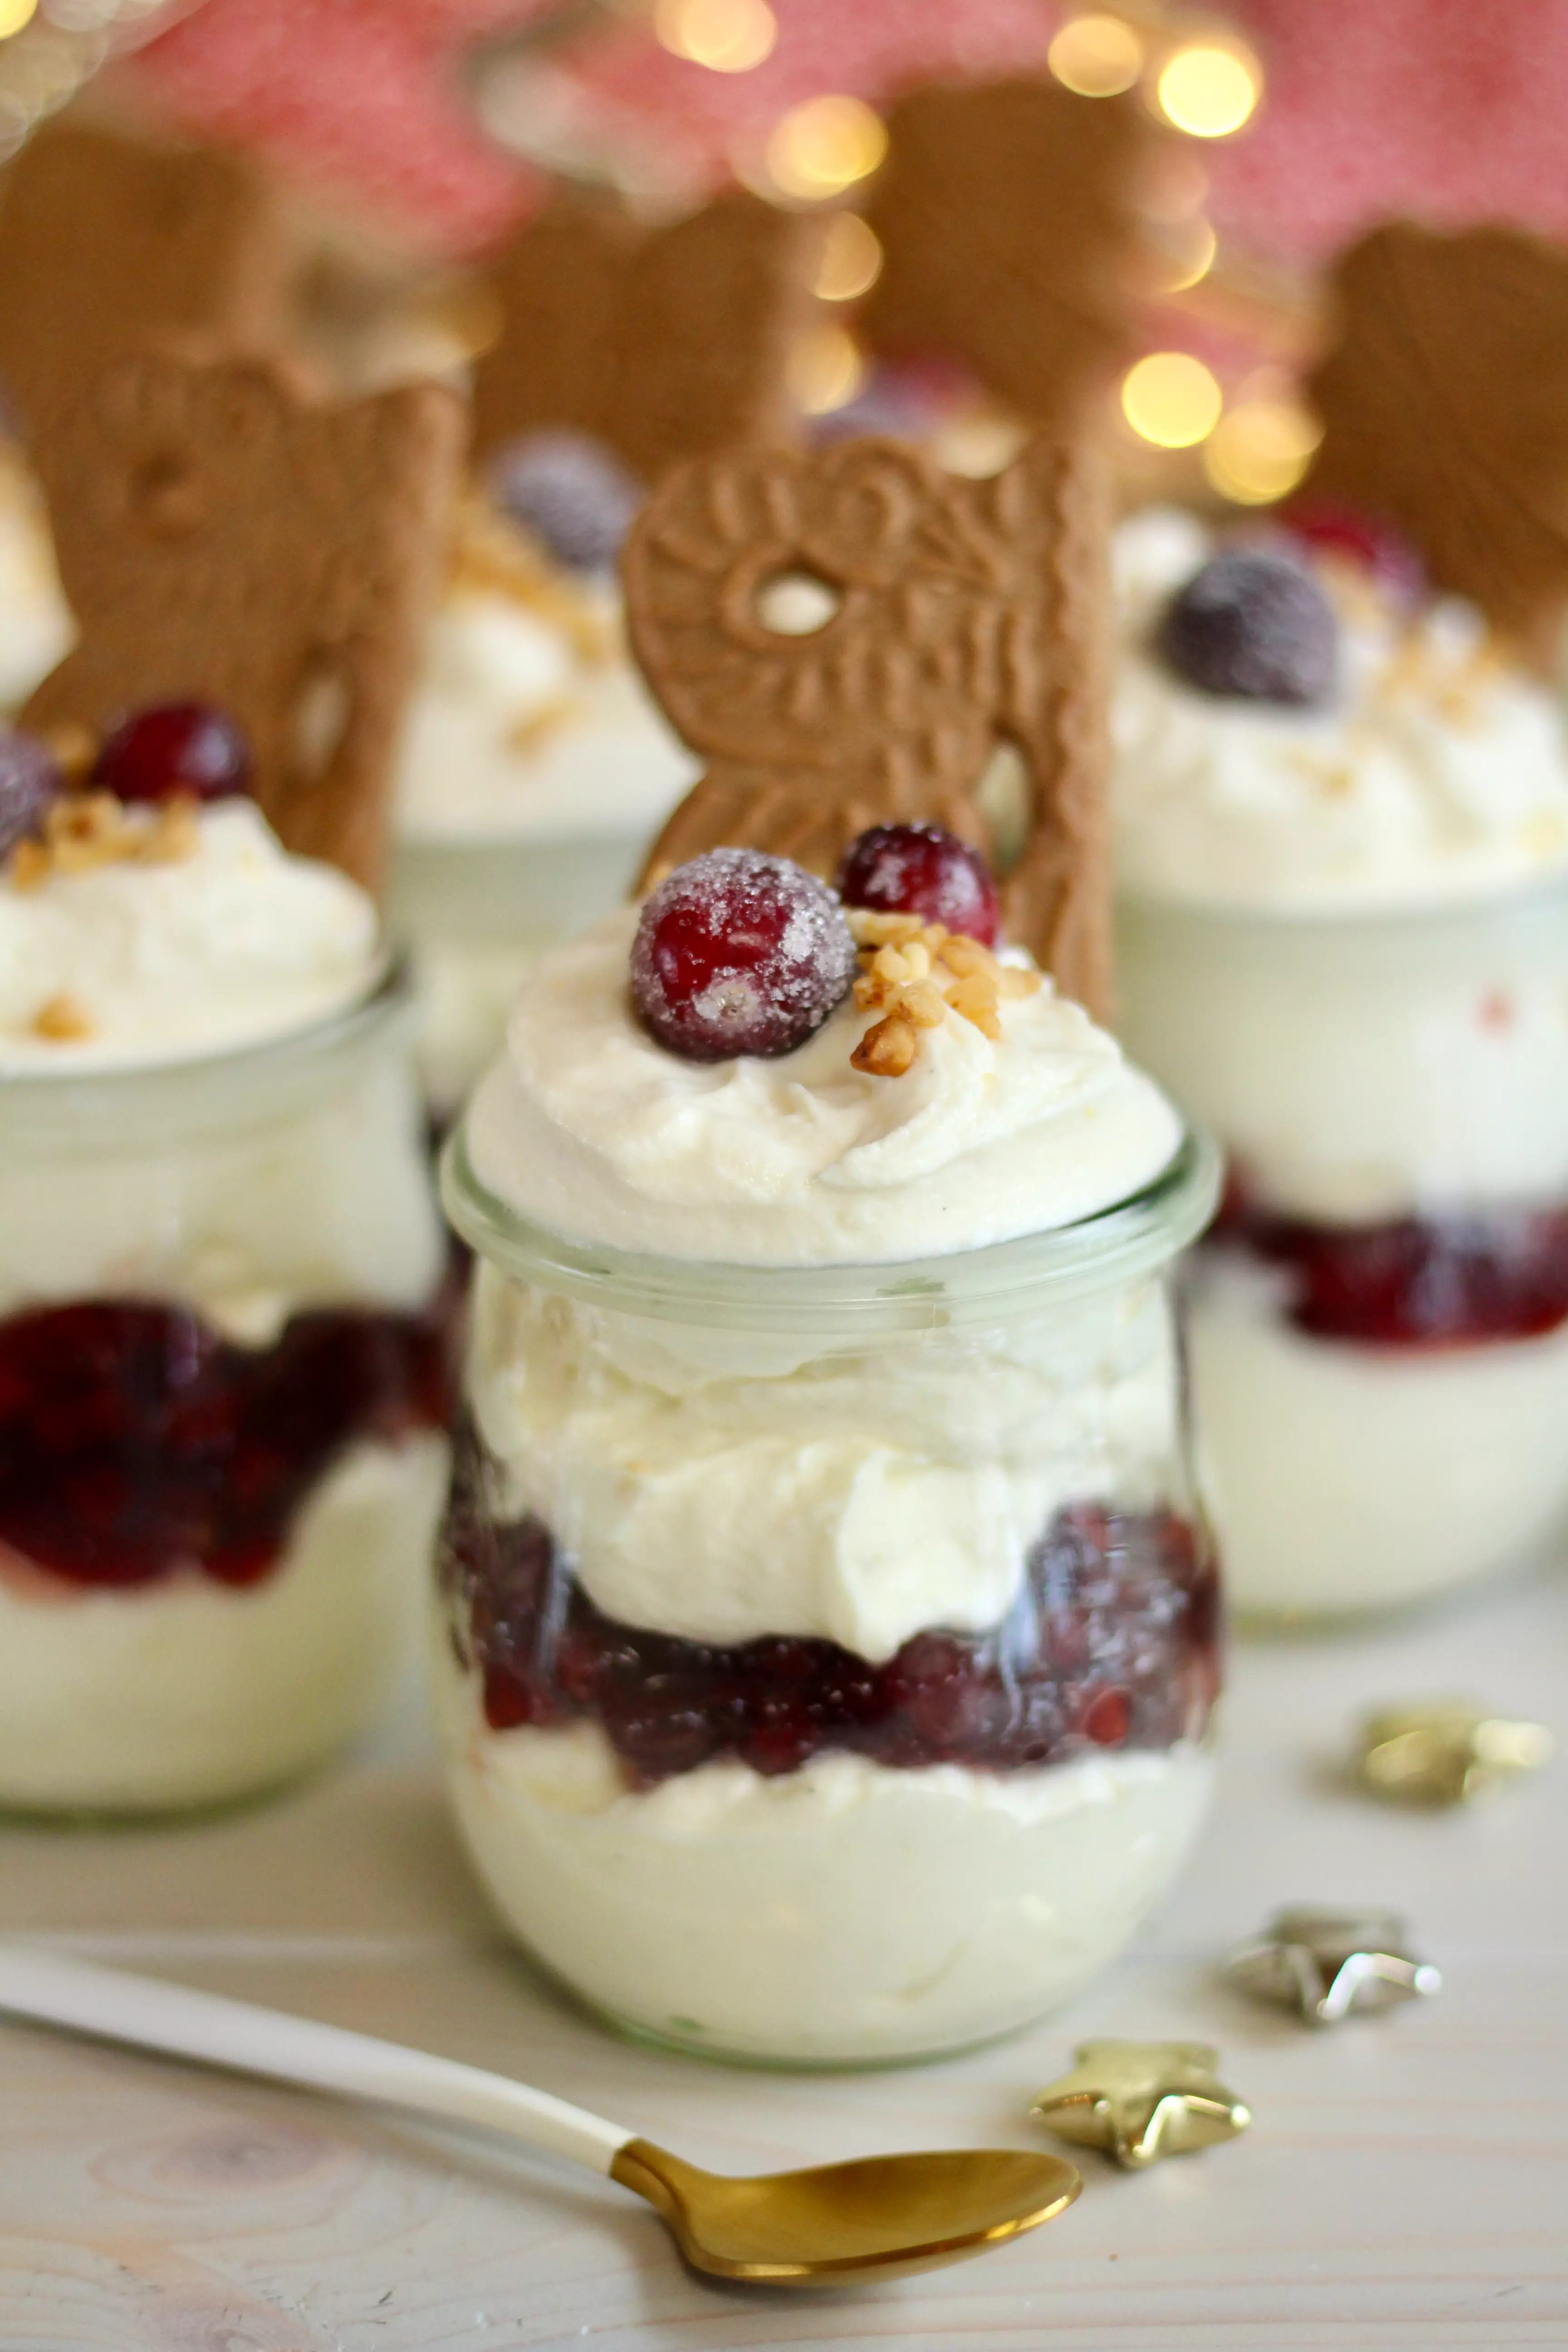 "Süße Sünde"-Dessert mit gezuckerten Cranberries | Rezept von Sugarprincess | SCCC 2022 mit Gewinnspiel: Türchen Nr. 22